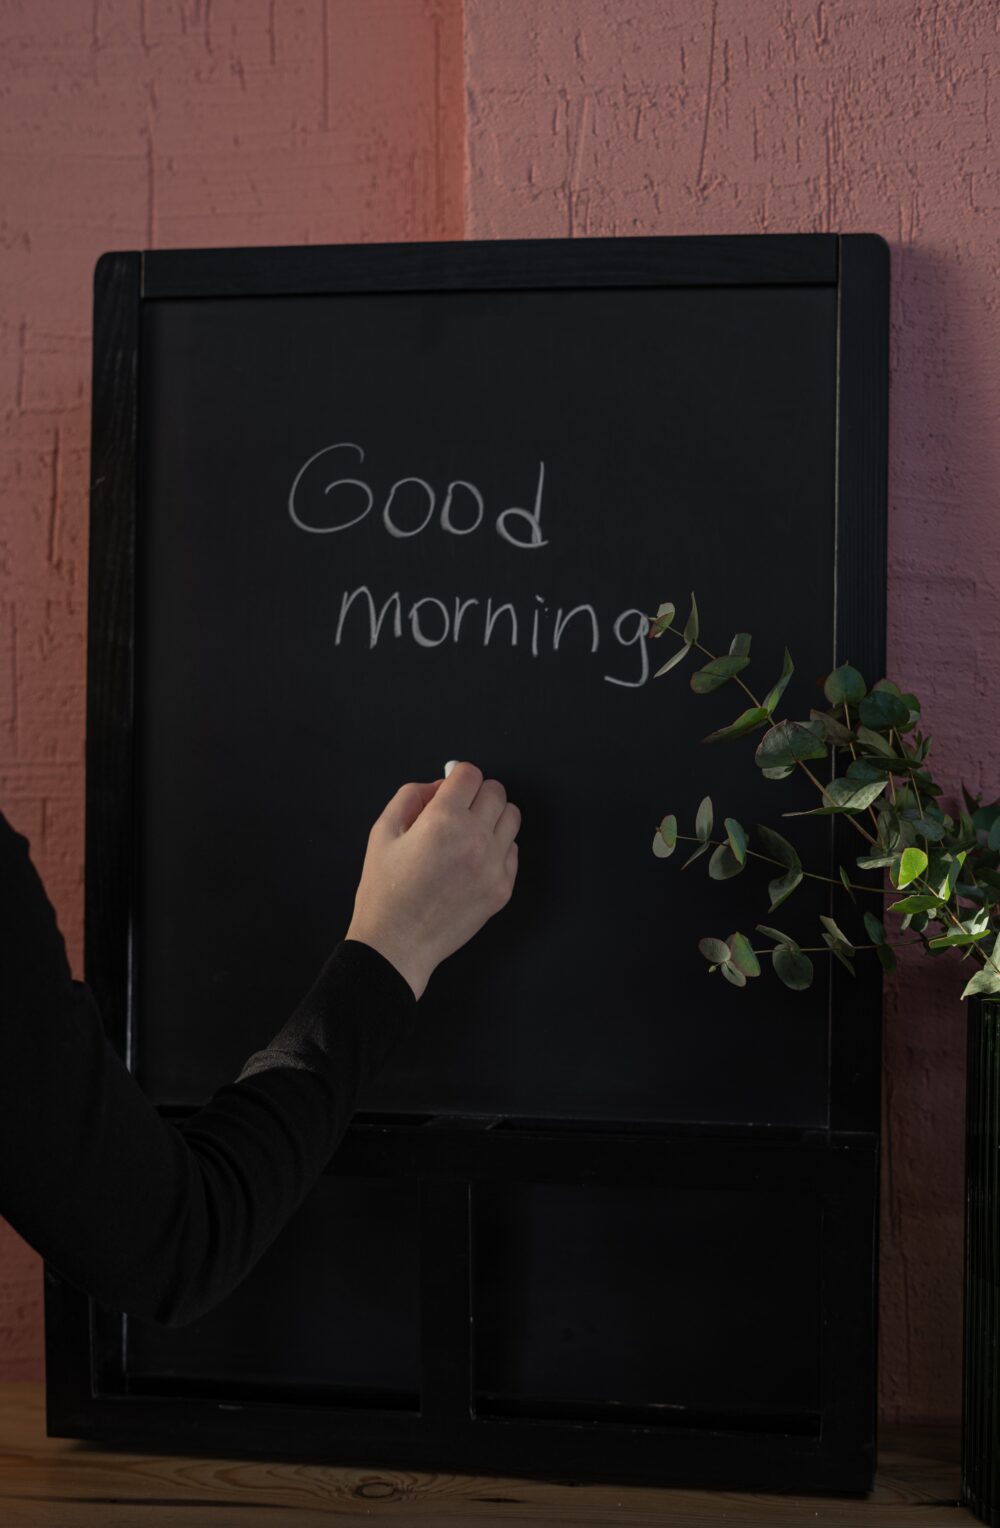 good morning written on chalkboard